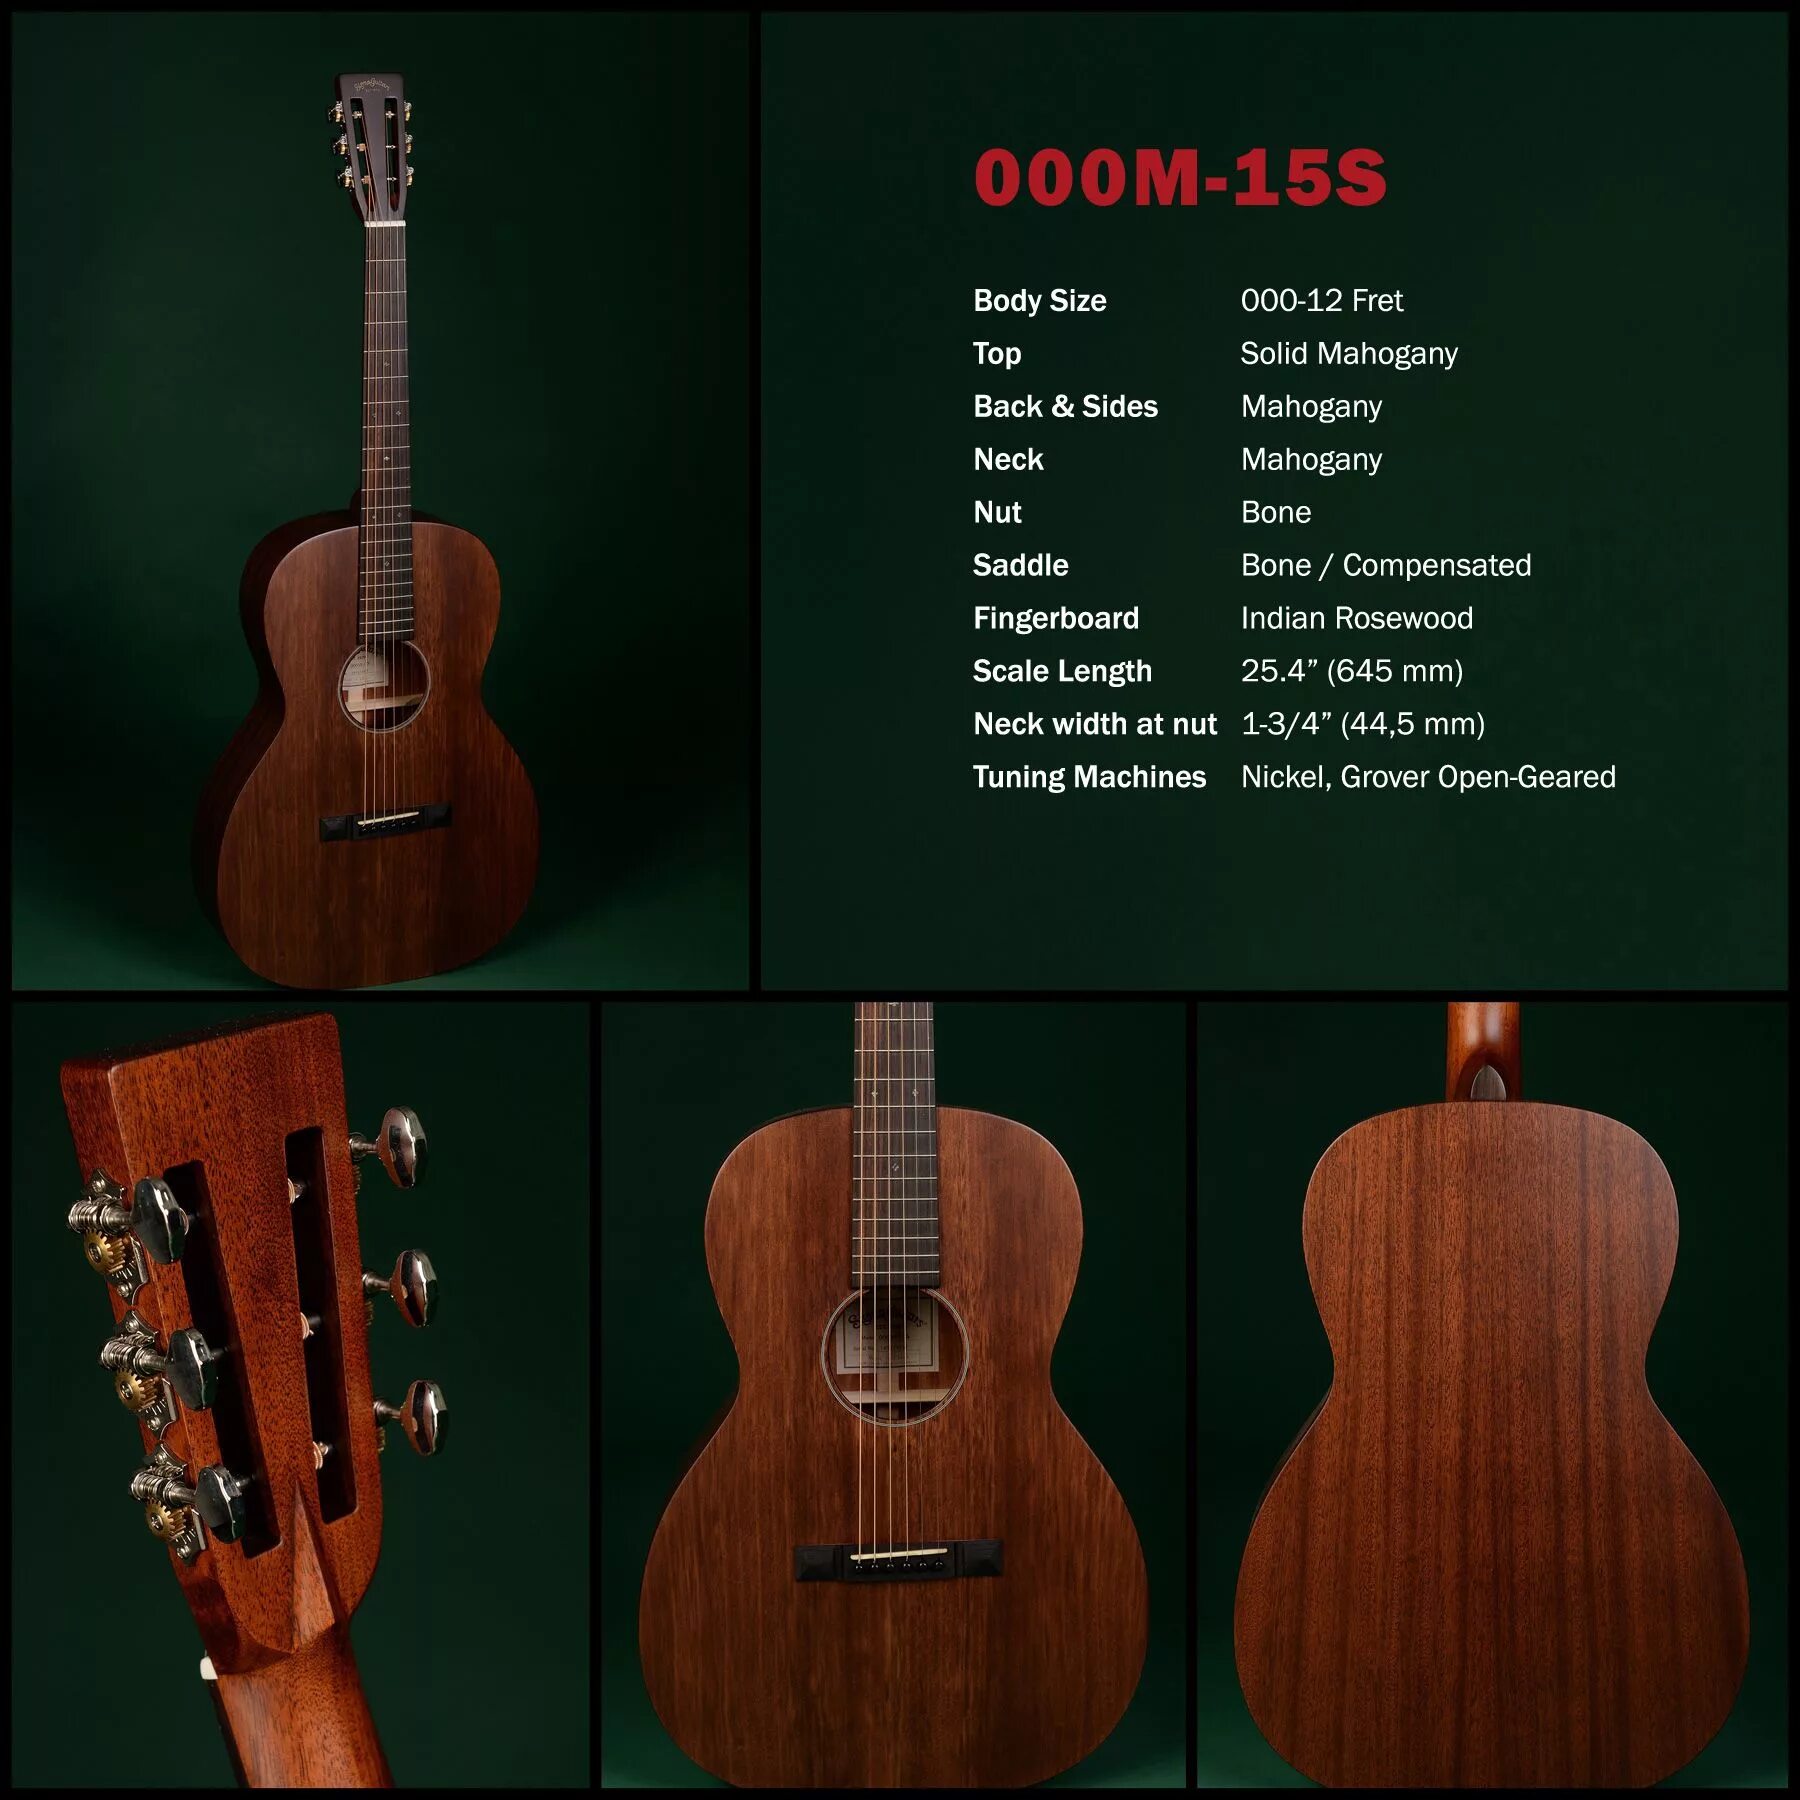 Гитара Sigma 000m-15. Гитара Sigma est 1970. Названия размеров гитар. Гитара Martin go est. Sigma 000m